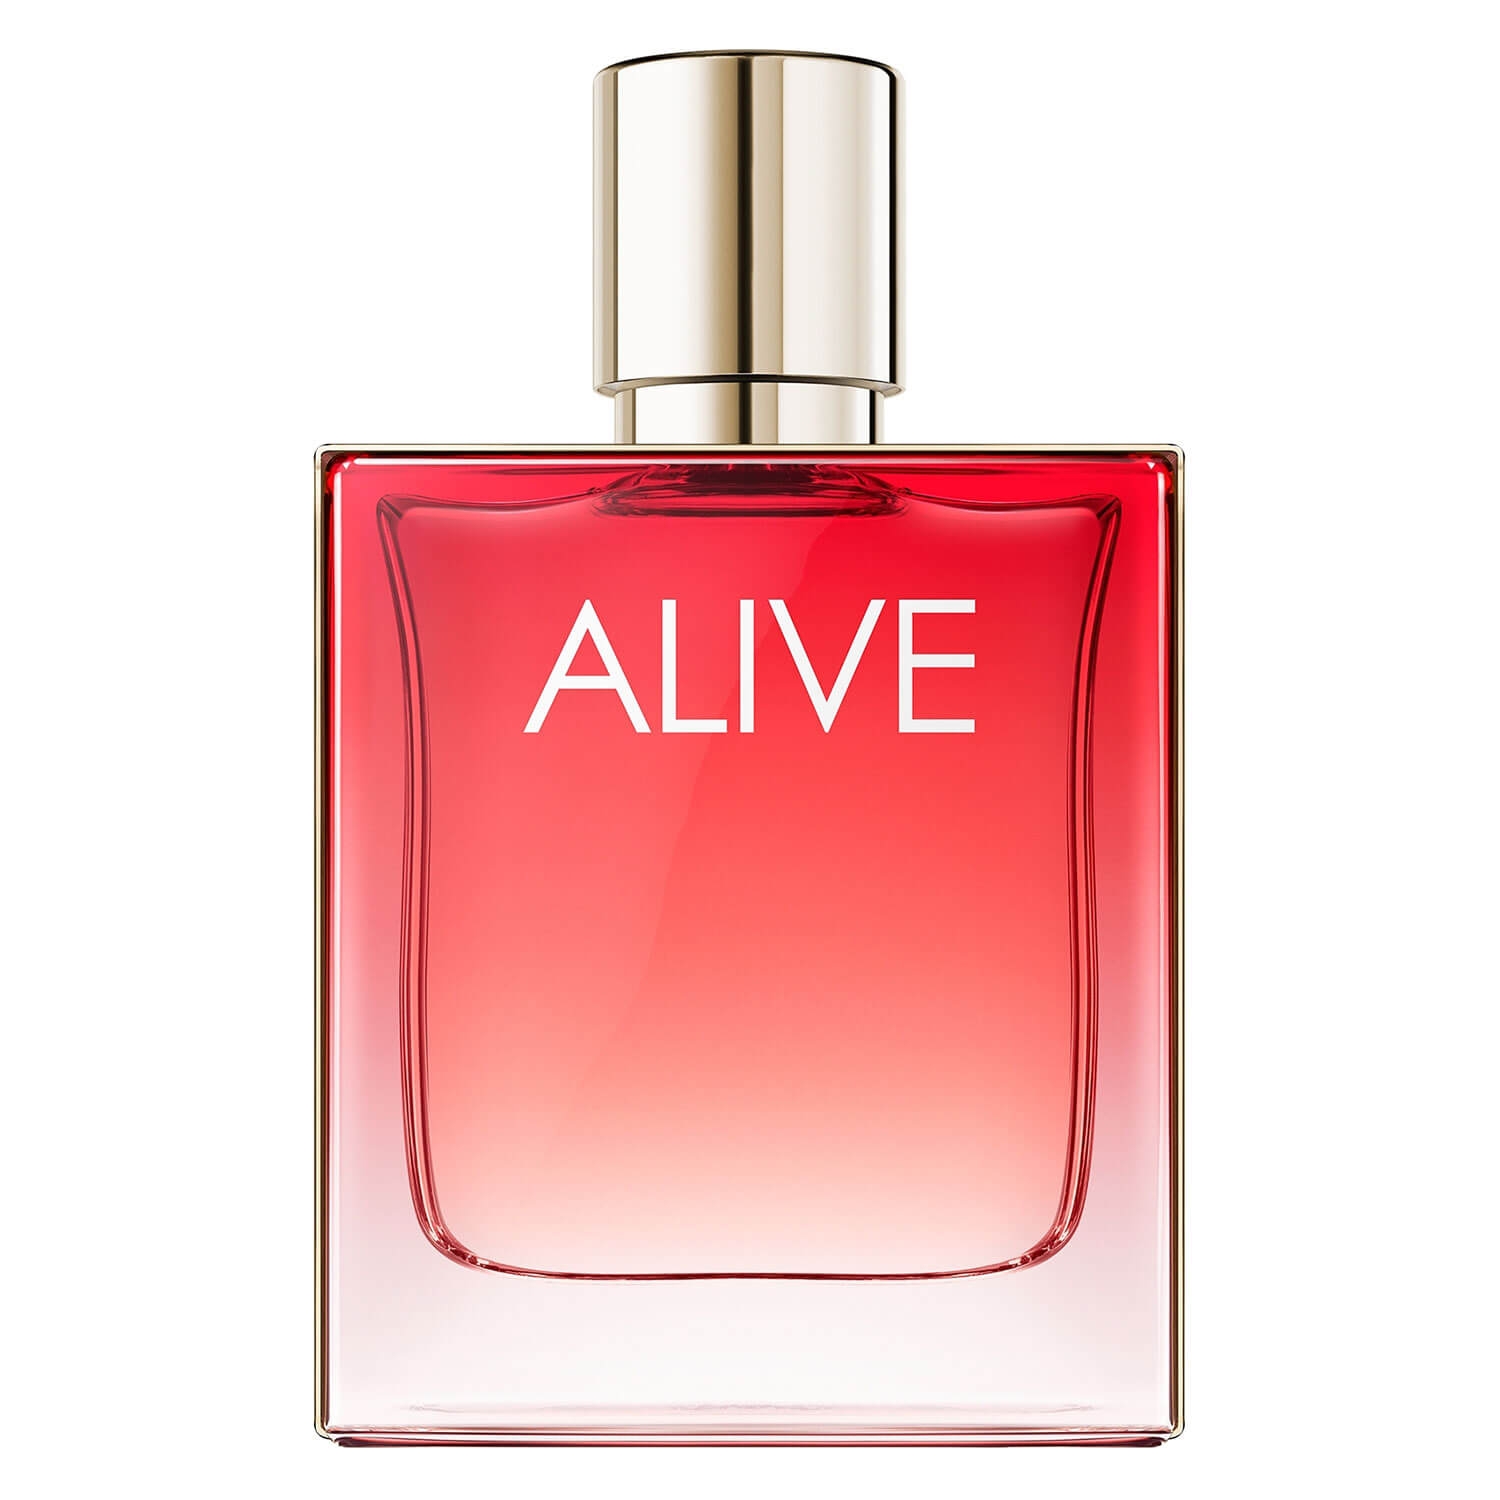 Product image from Boss Alive - Eau de Parfum Intense